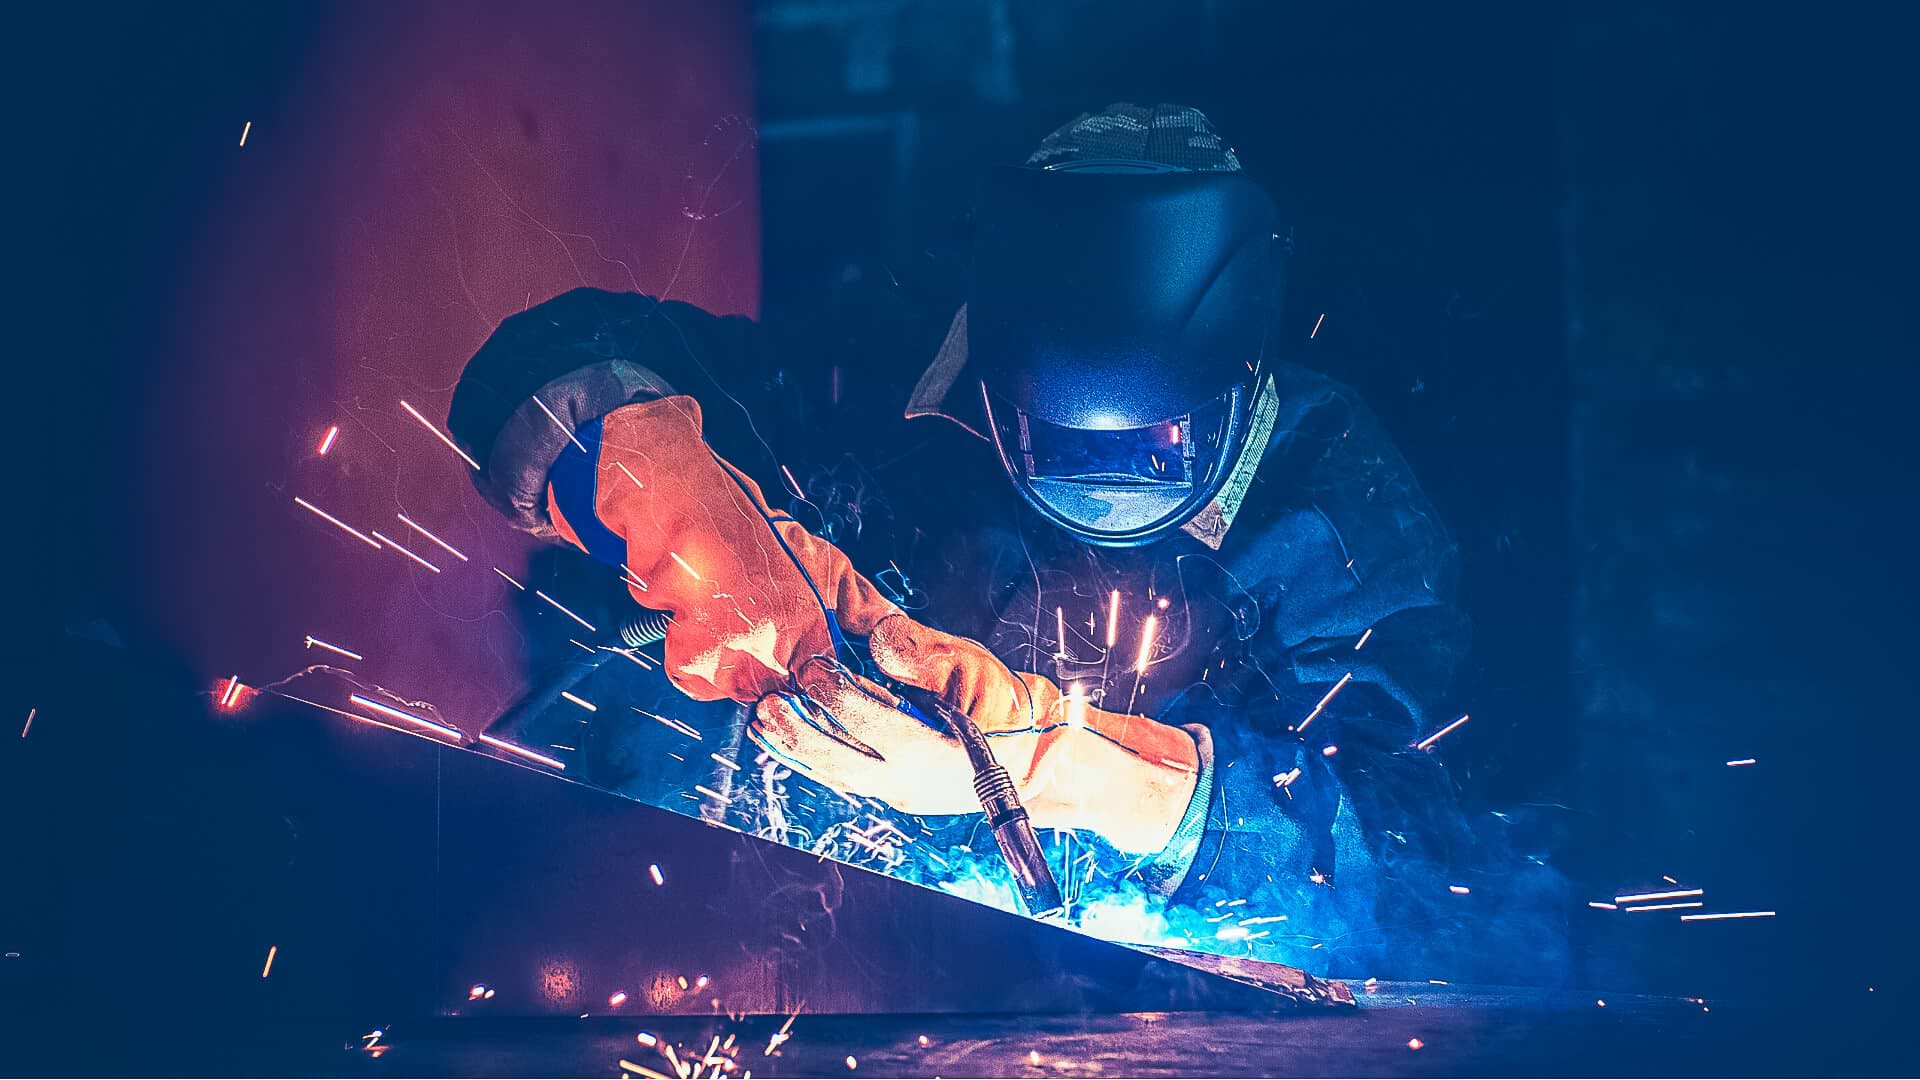 A Worker Welding Metal Needs Proper Ventilation